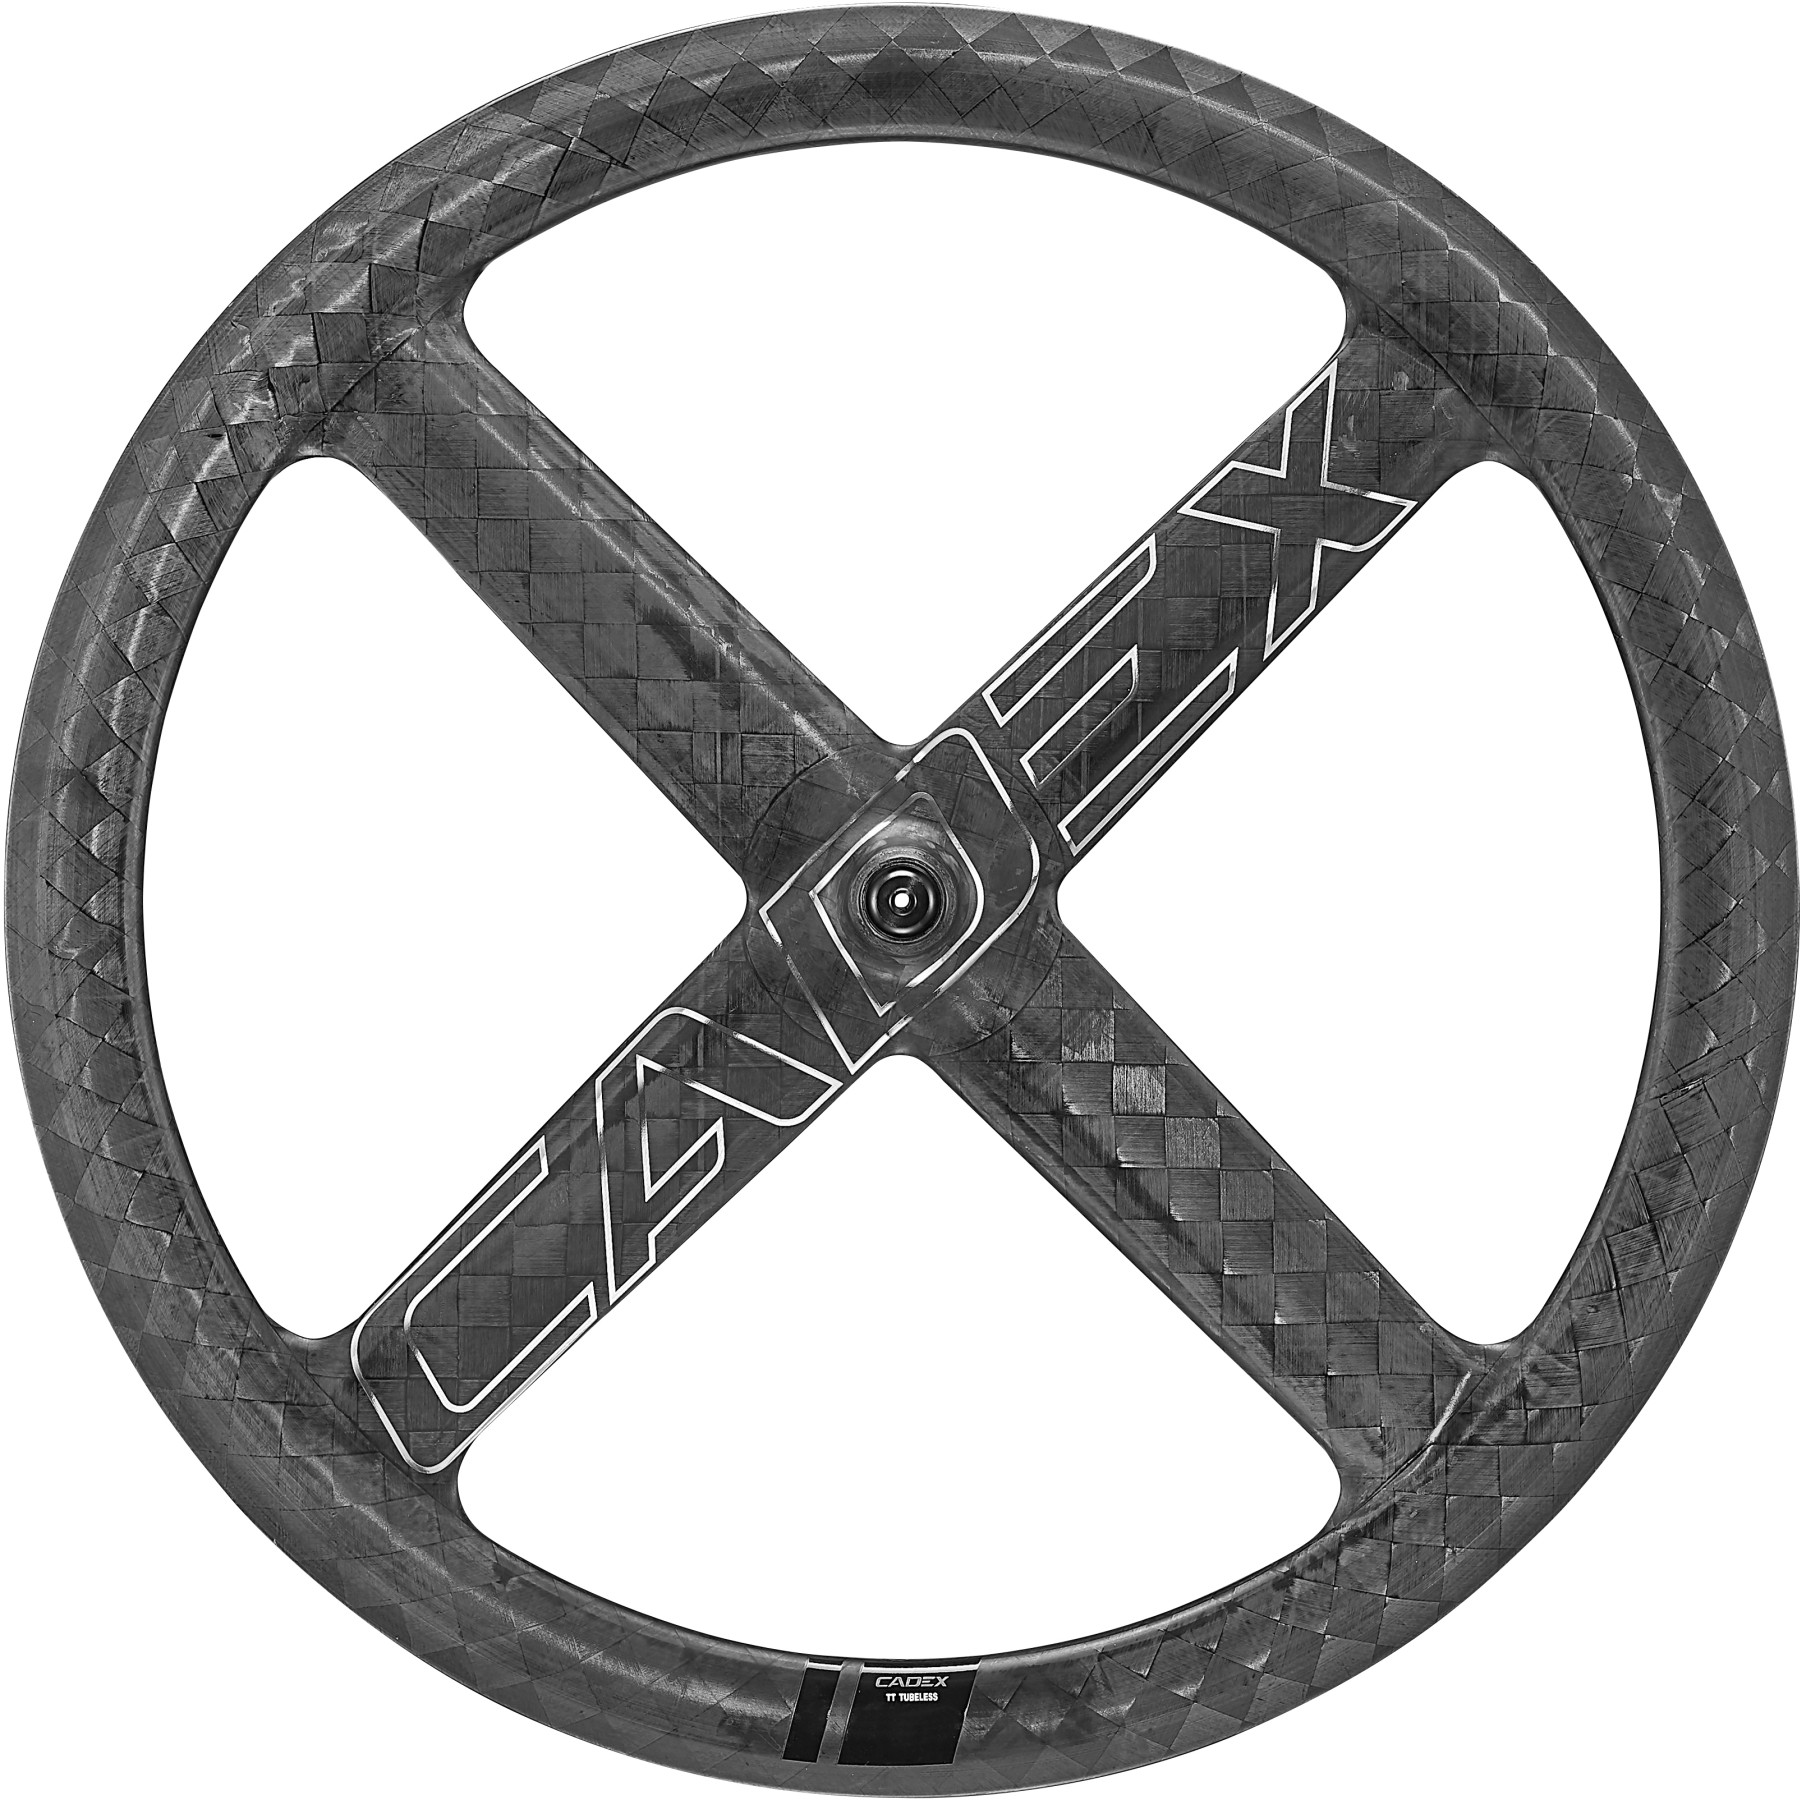 Productfoto van CADEX 4-Spoke Aero Tubeless Front Wheel - Clincher - 9x100mm QR